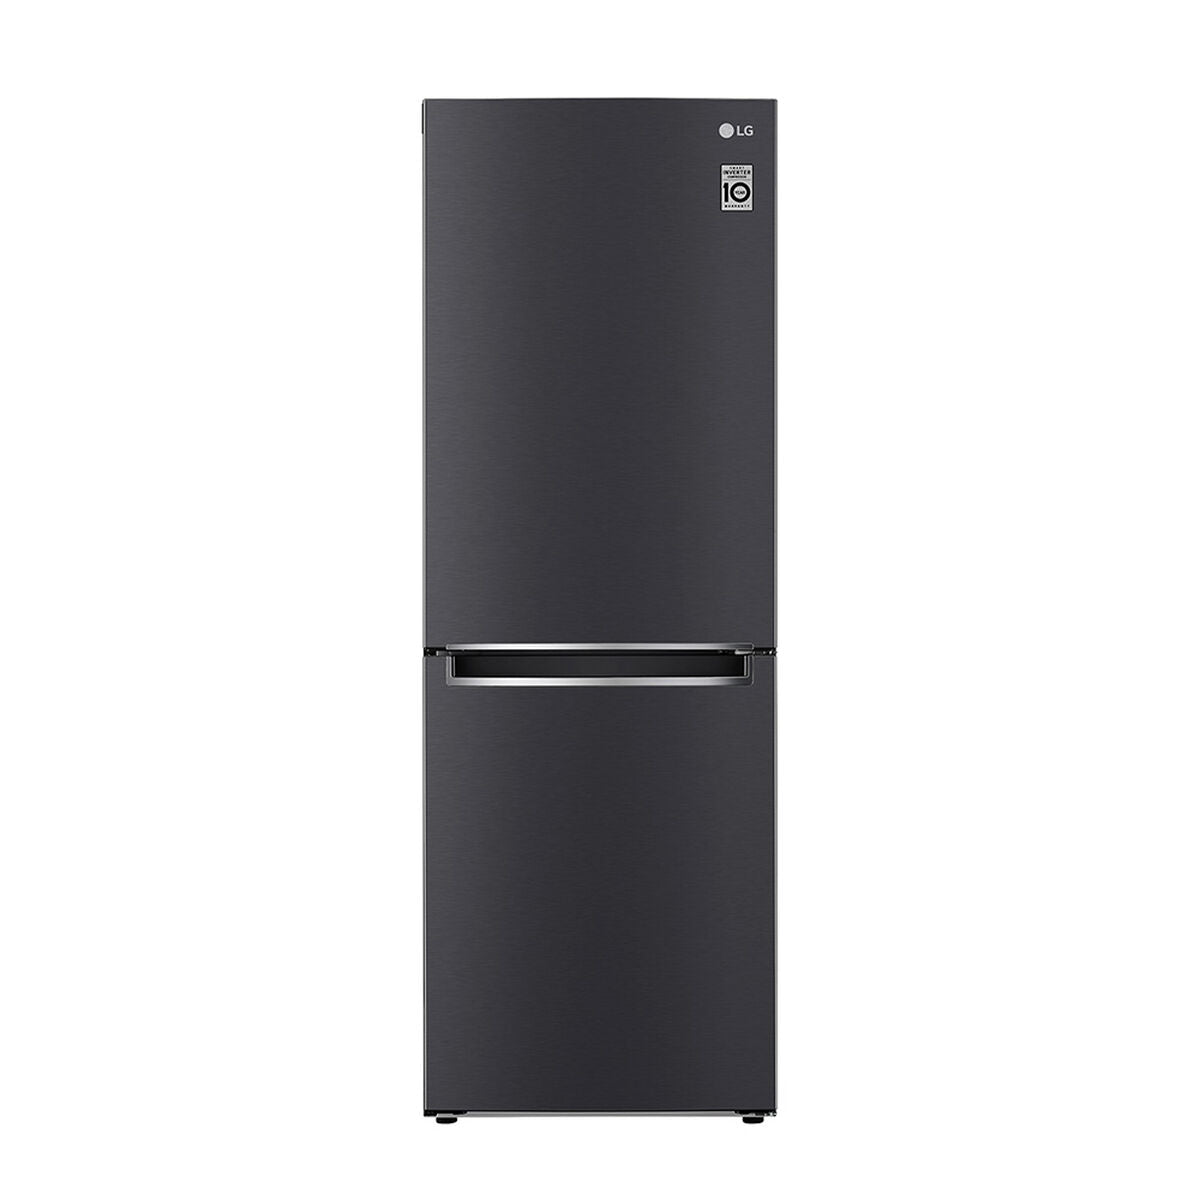 Refrigerador No Frost LG GB33BPT 306 lts. [Open box]  [Wall]